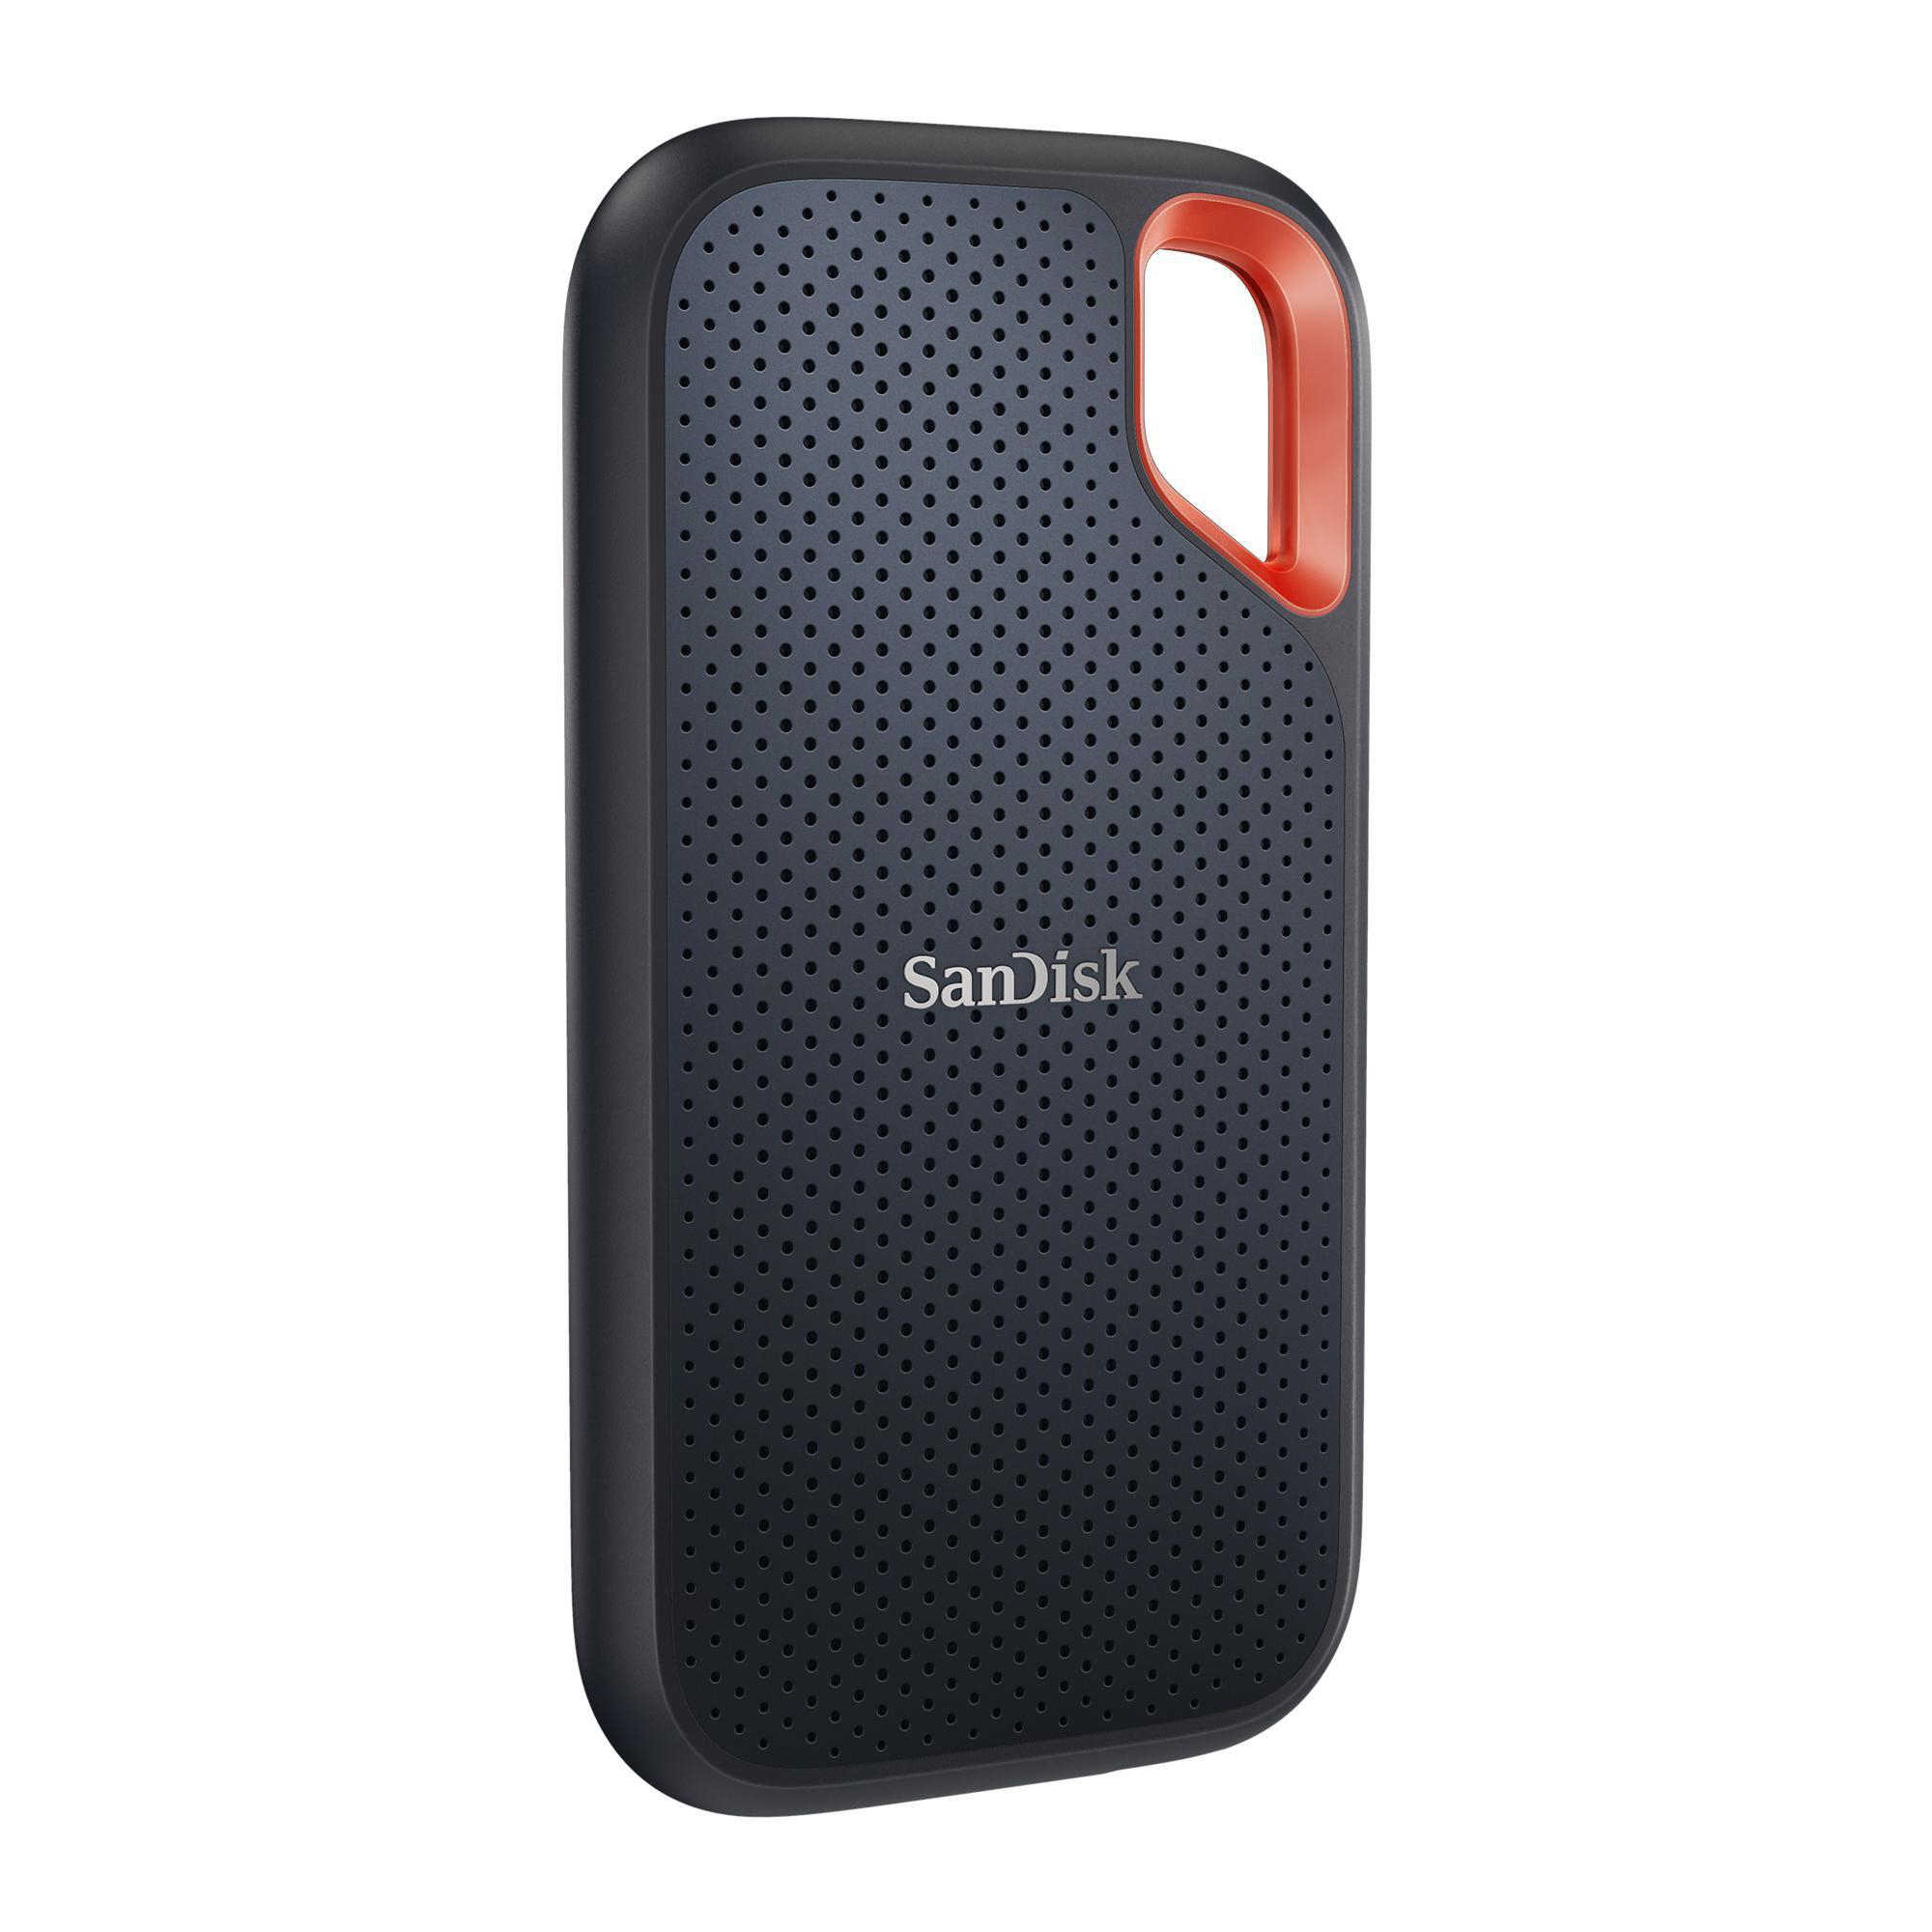 SANDISK Extreme SSD, GB Speicher, 500 Grau/Orange Portable extern